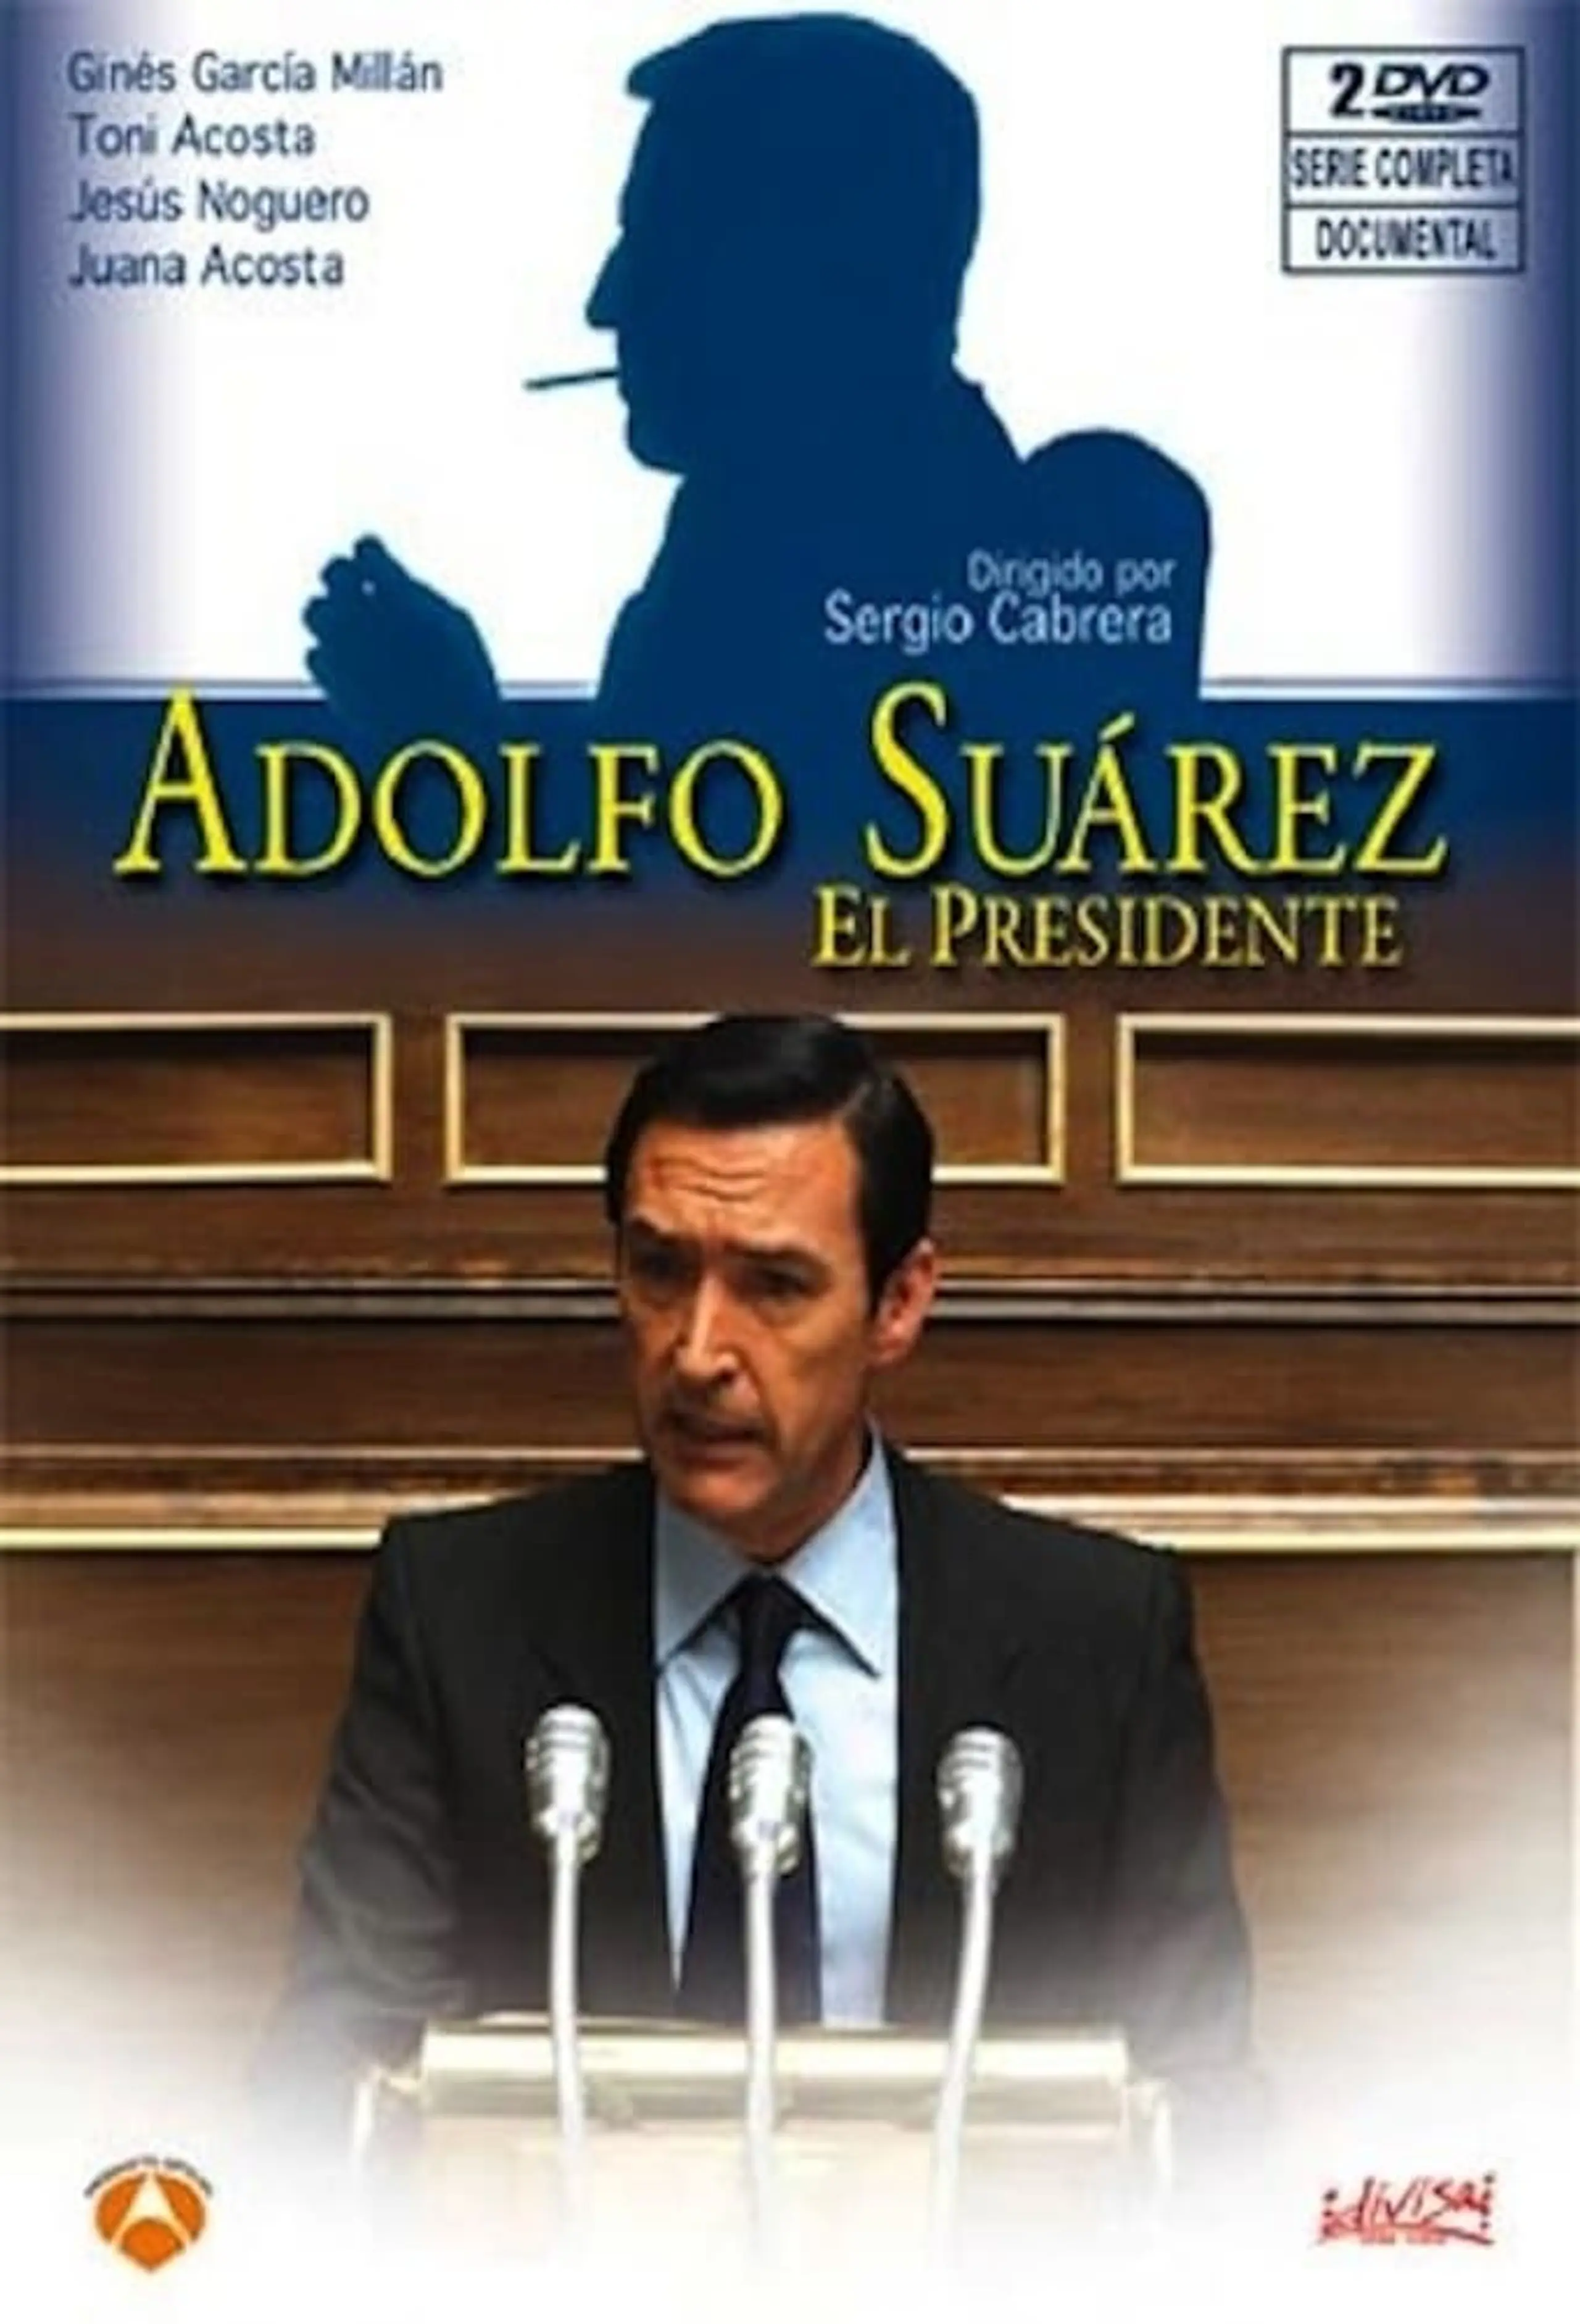 Adolfo Suarez, El Presidente